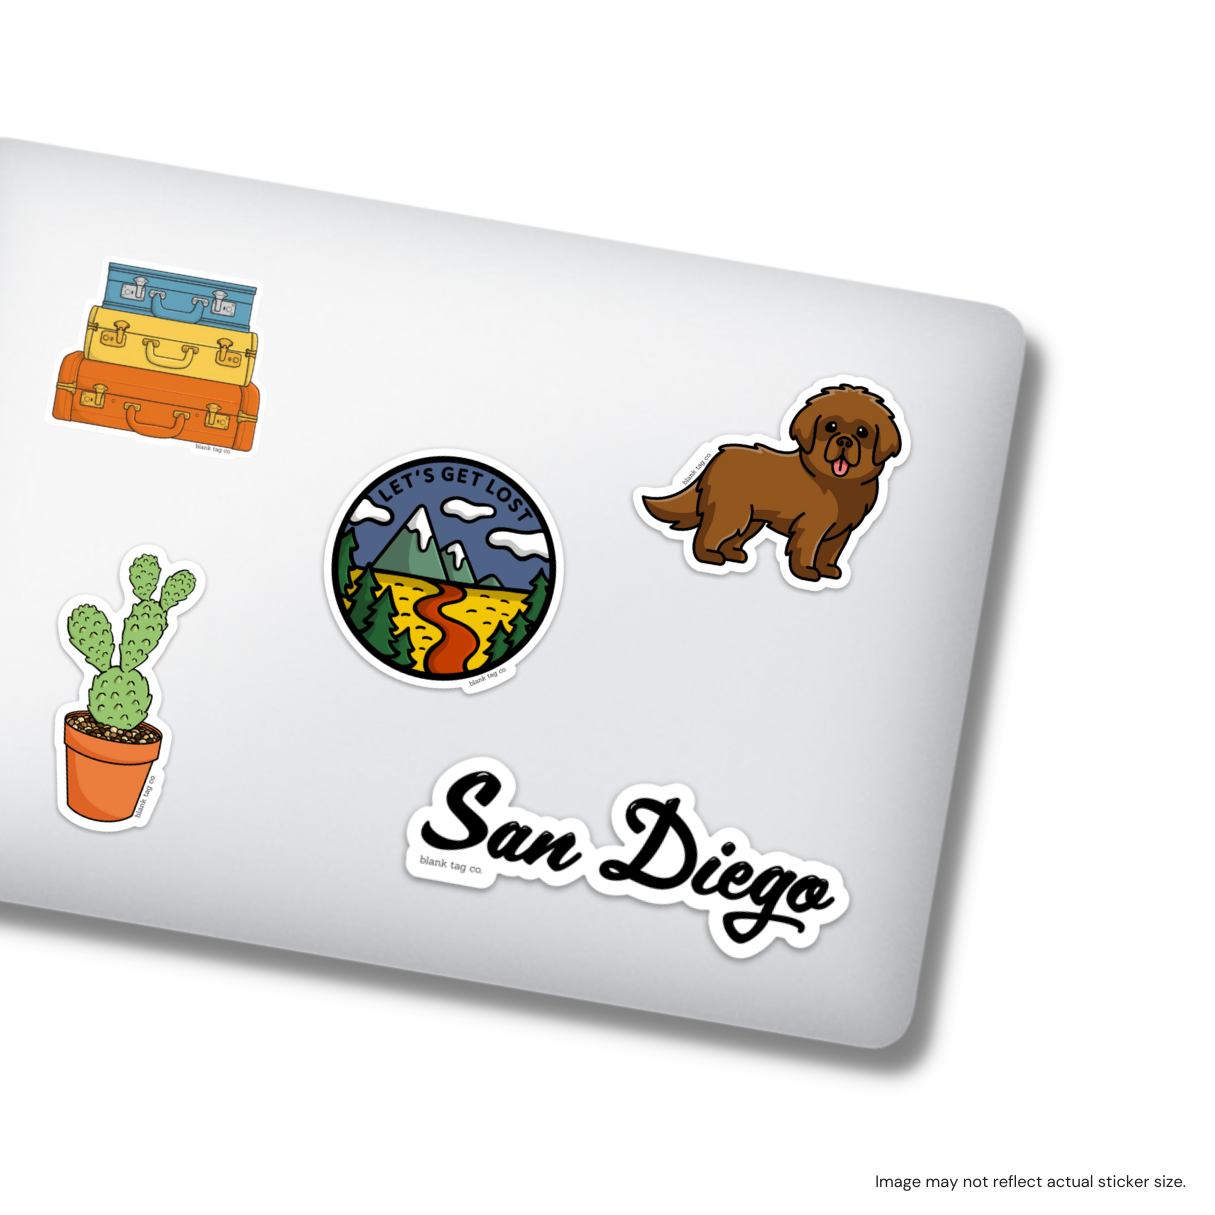 The San Diego Sticker